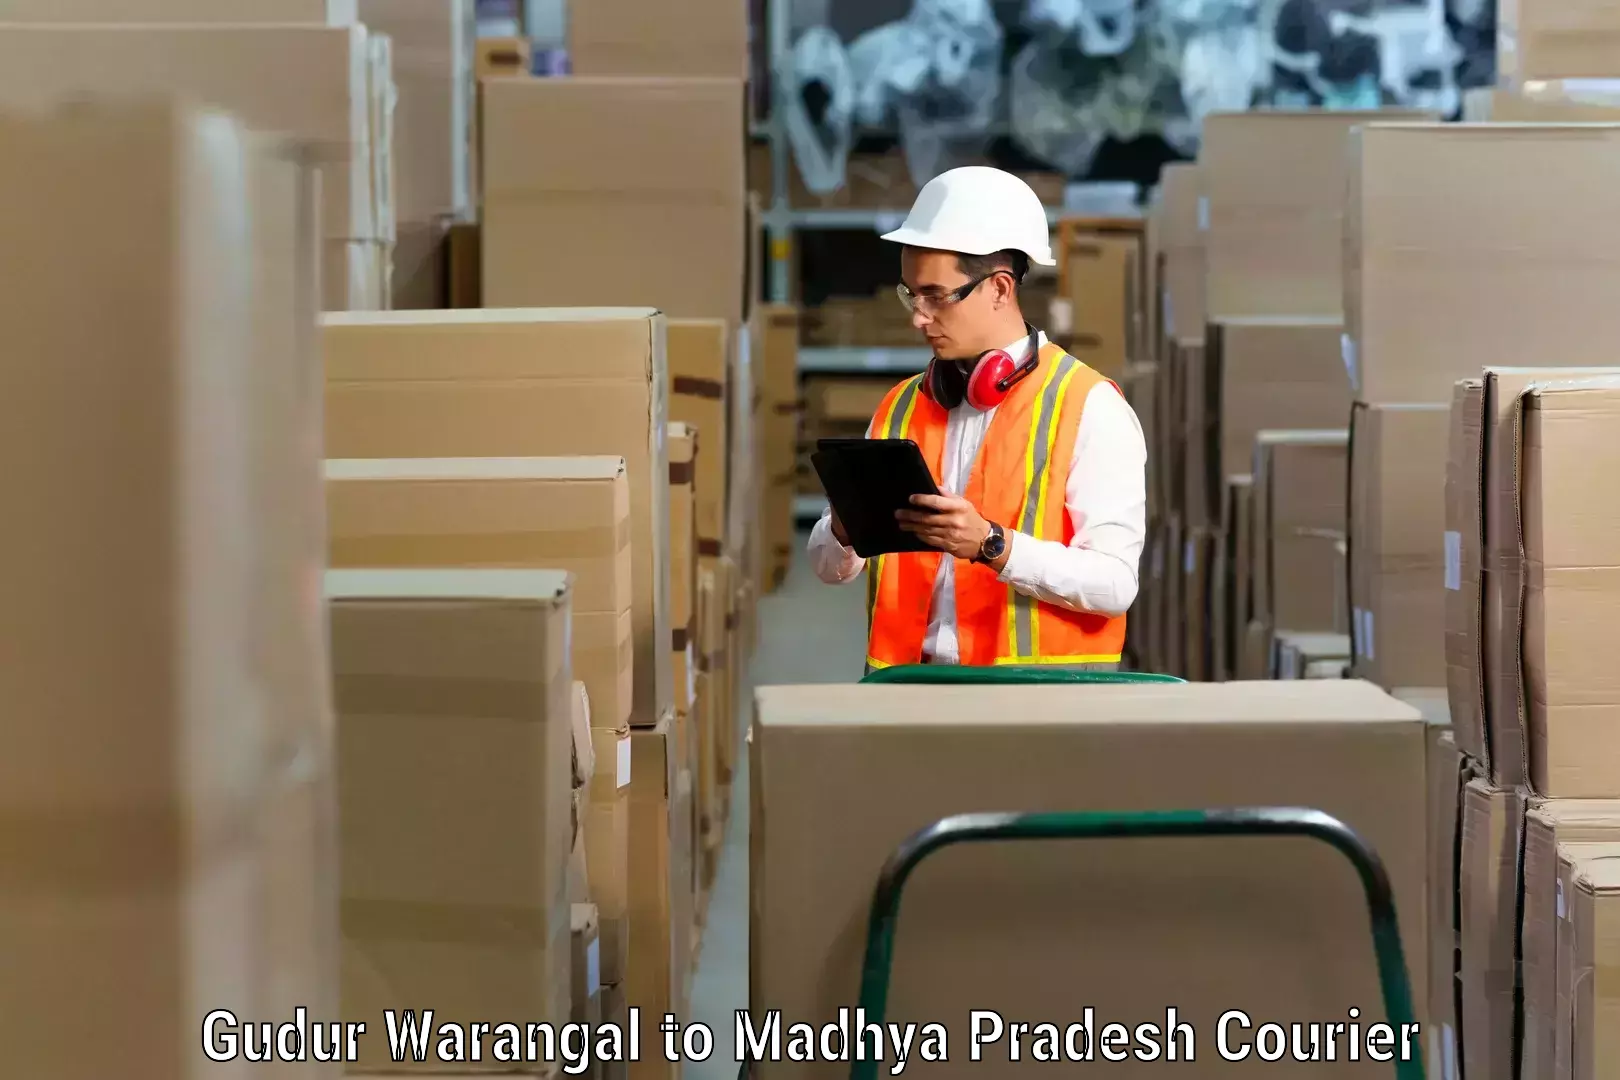 Furniture moving experts Gudur Warangal to Amarwara